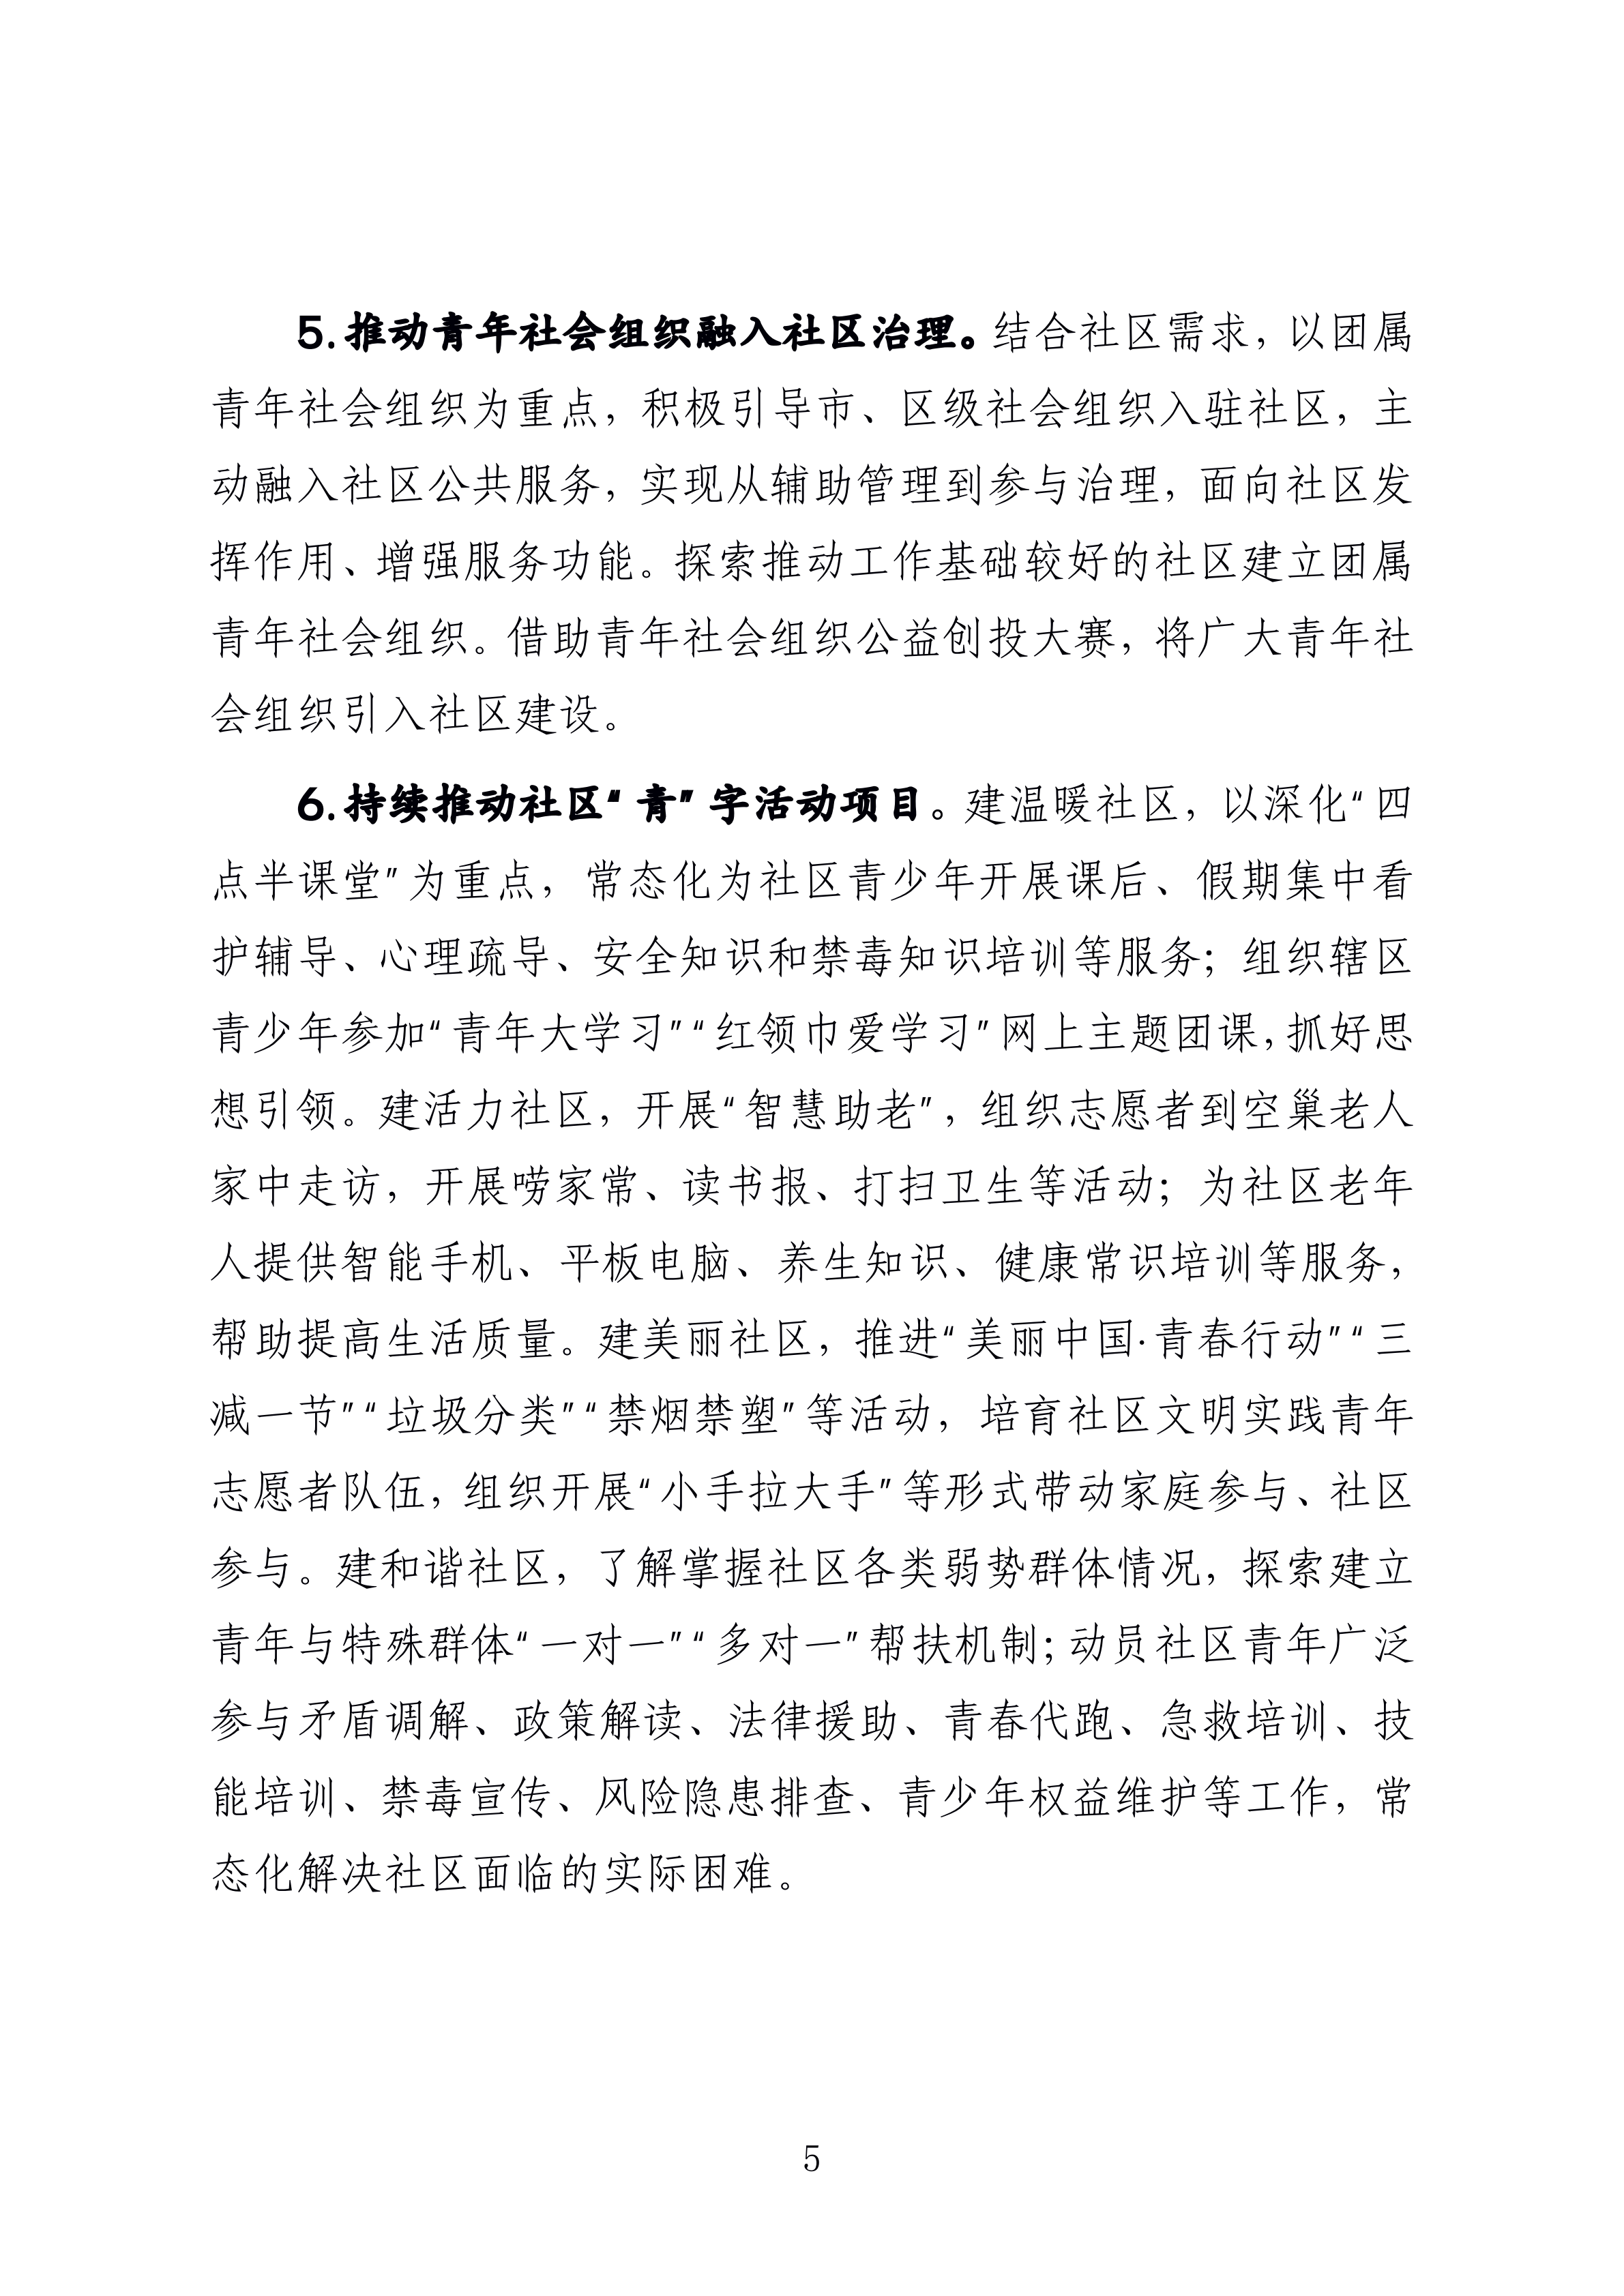 1-
  海南省民政厅 关于印发《海南省社区青春行动工作方案》 的通知_04.png